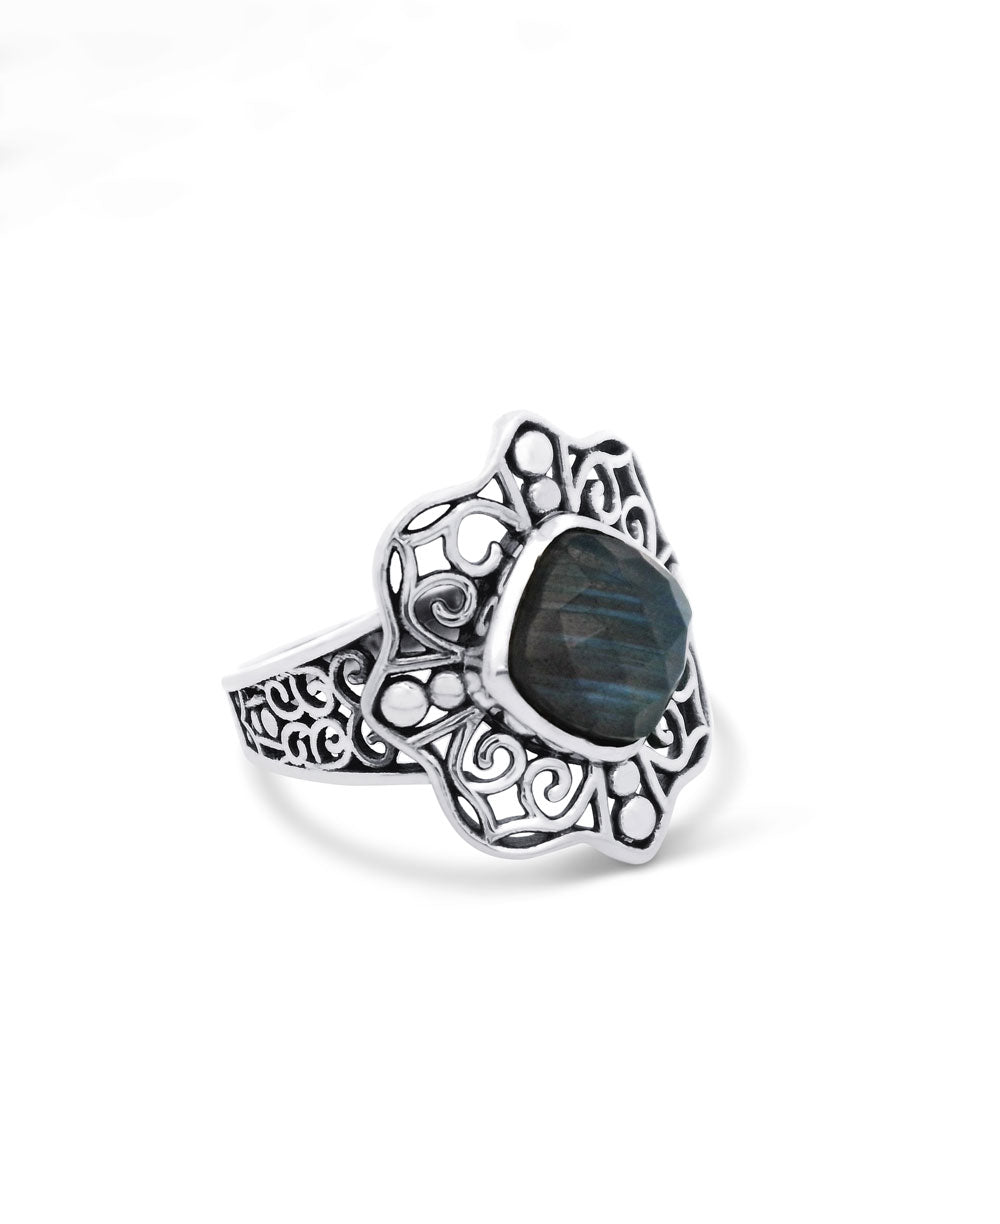 Sterling Silver Labradorite Ring with Lotus Mandala Design - Rings 6